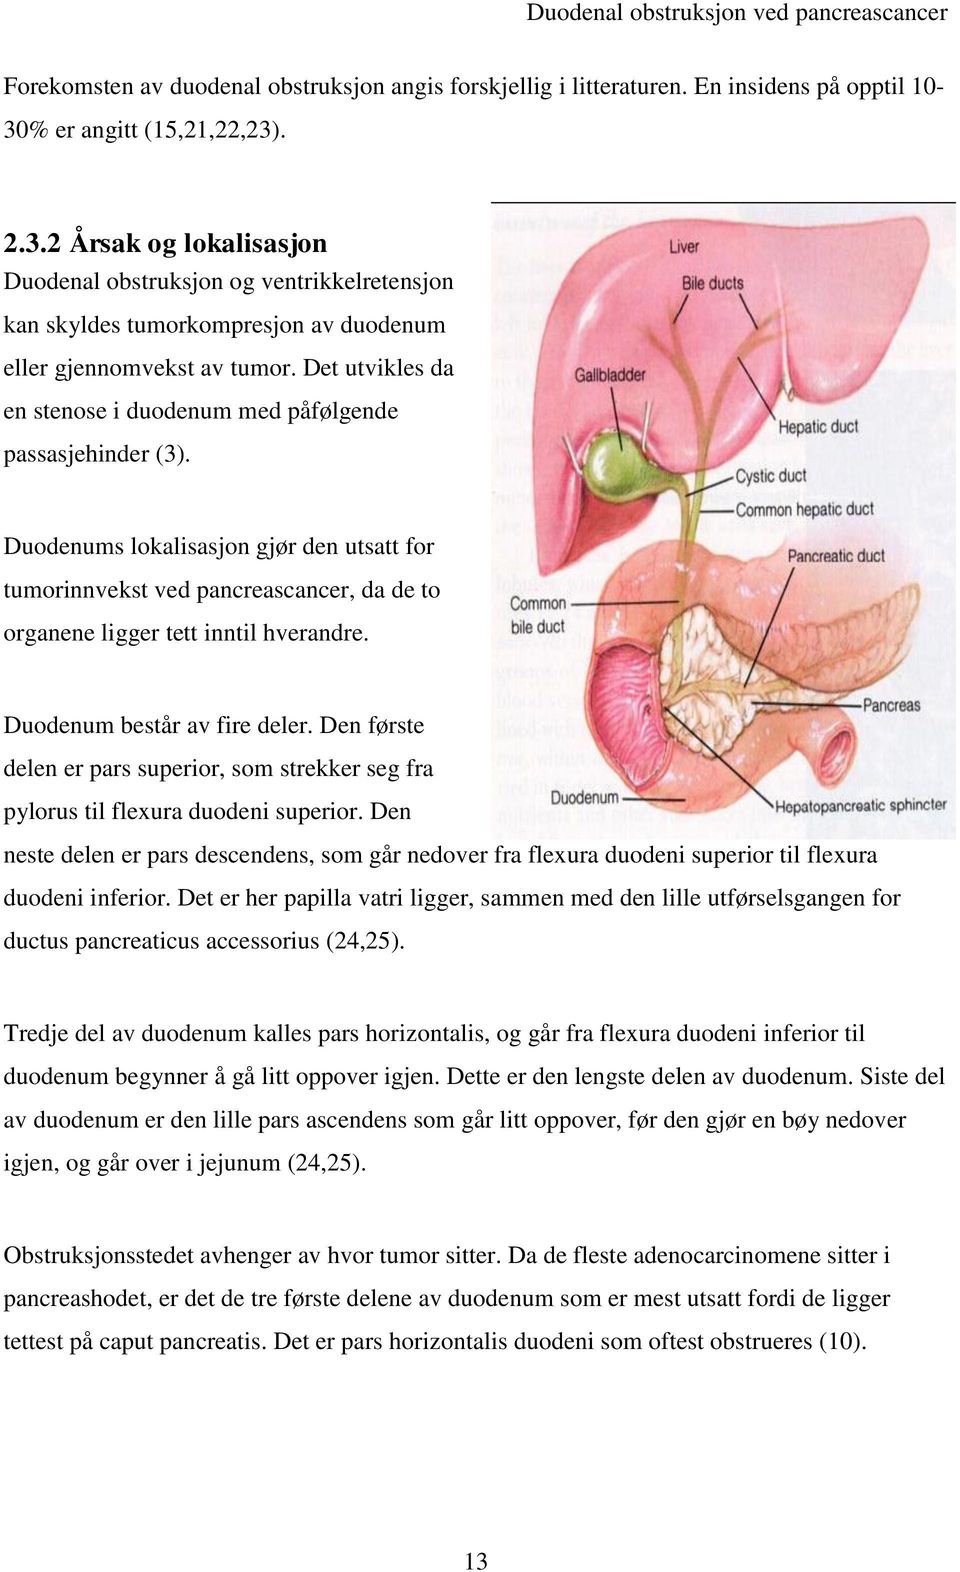 Det utvikles da en stenose i duodenum med påfølgende passasjehinder (3). Duodenums lokalisasjon gjør den utsatt for tumorinnvekst ved pancreascancer, da de to organene ligger tett inntil hverandre.